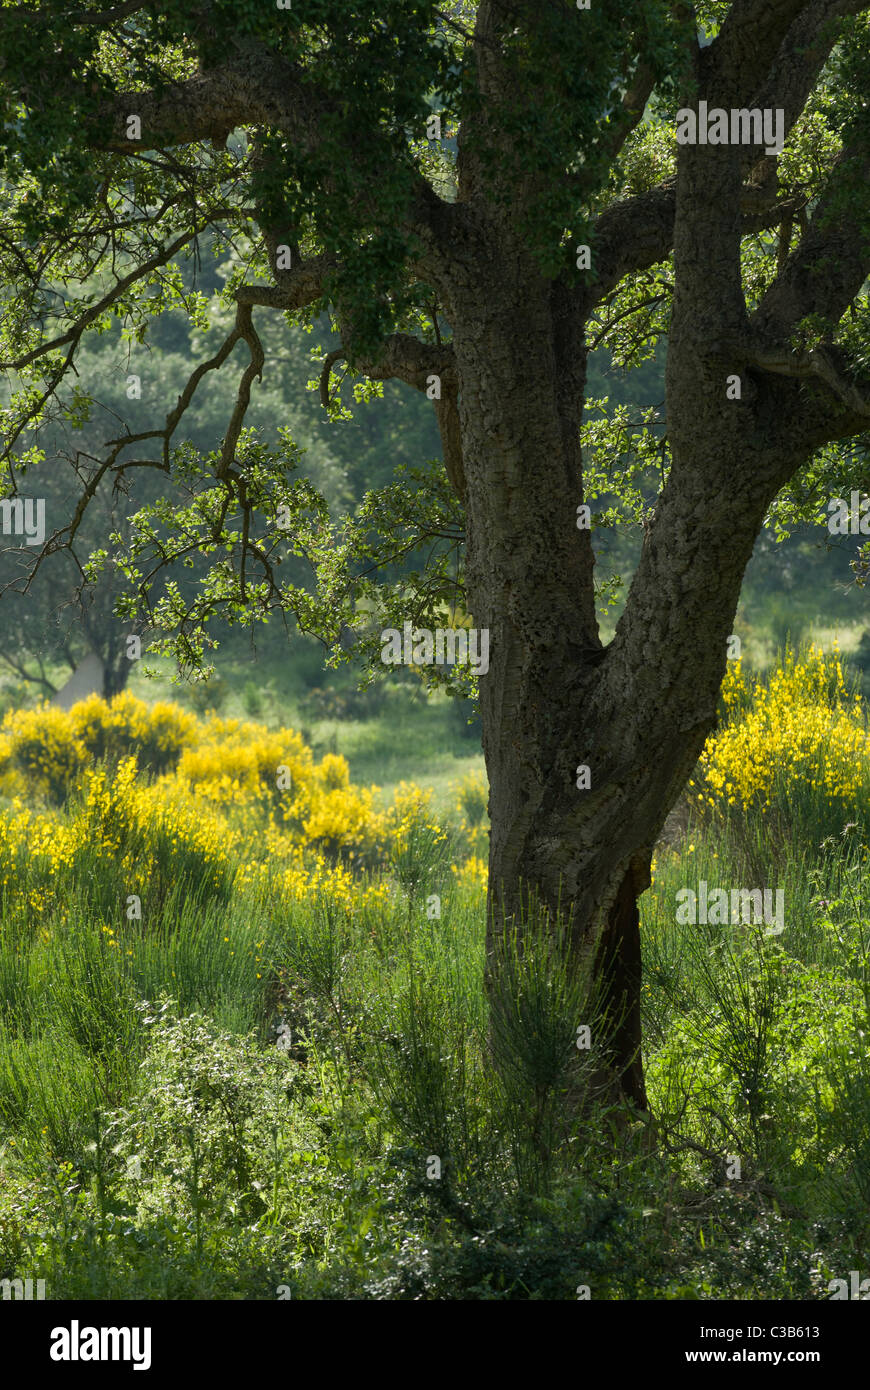 Quercia da sughero (Quercus suber) nella vegetazione di macchia mediterranea, Corsica, Francia Foto Stock